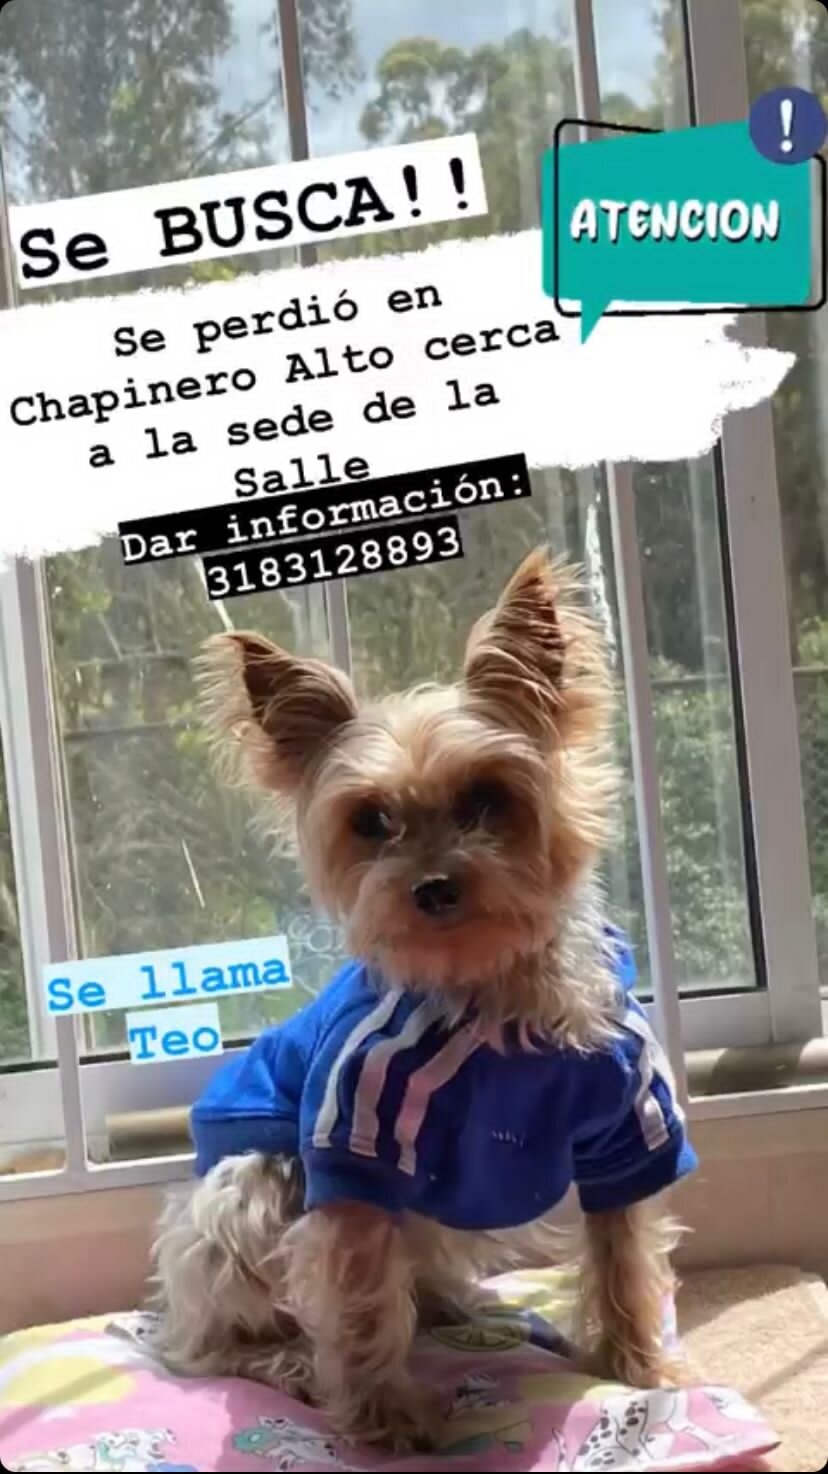 Se busca: Theo fue robado hoy en Bogotá